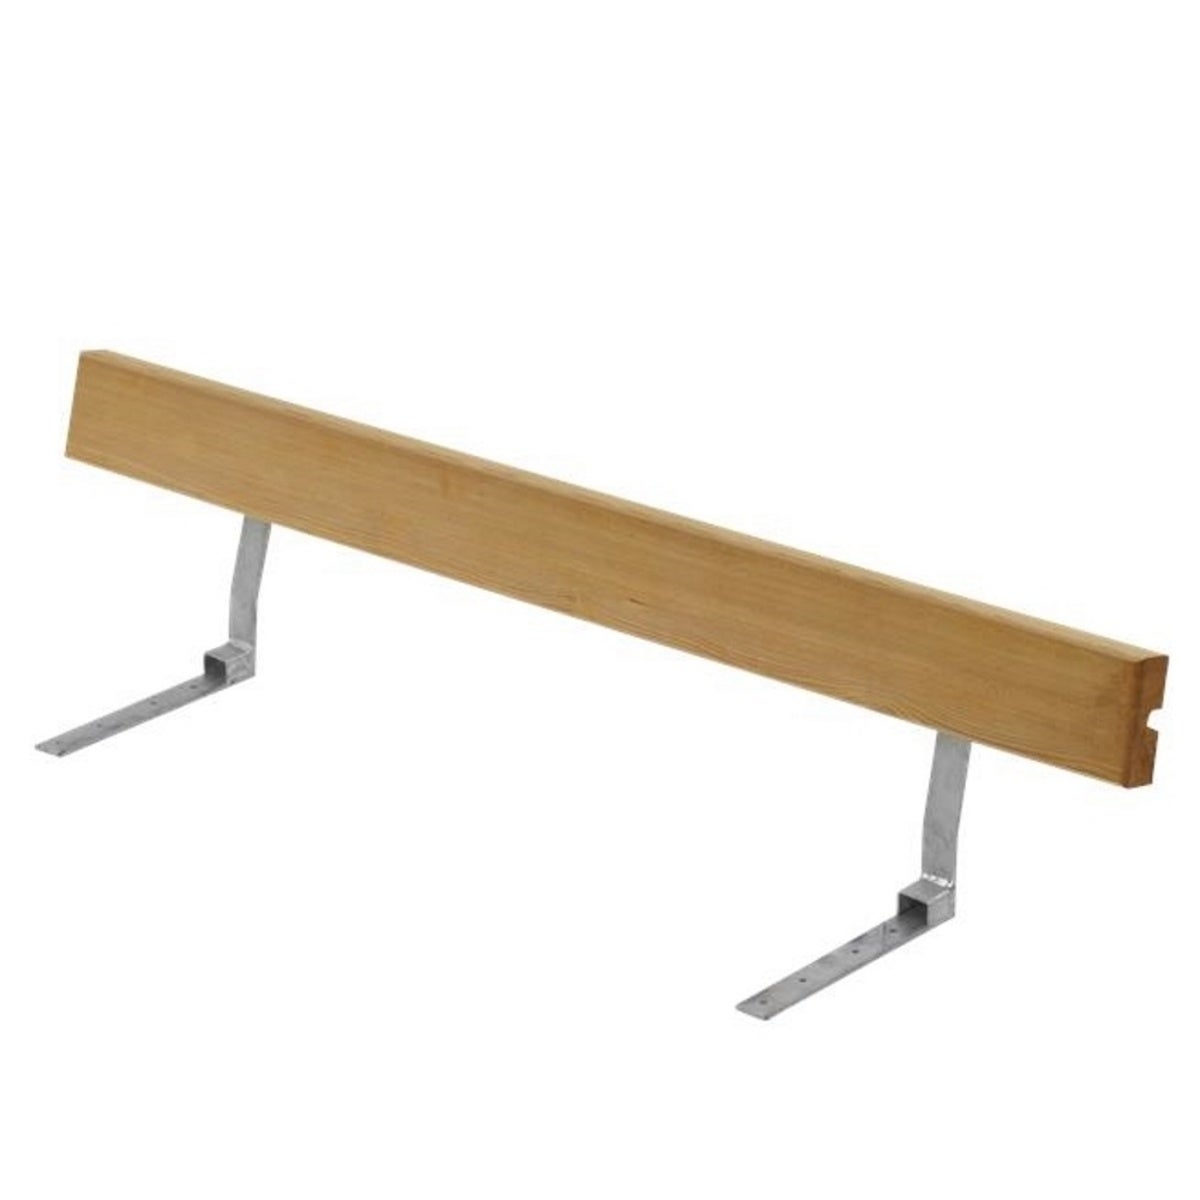 Ruckenlehne Picknicktisch für Kinder - Länge 110cm - KDI Holz - natur